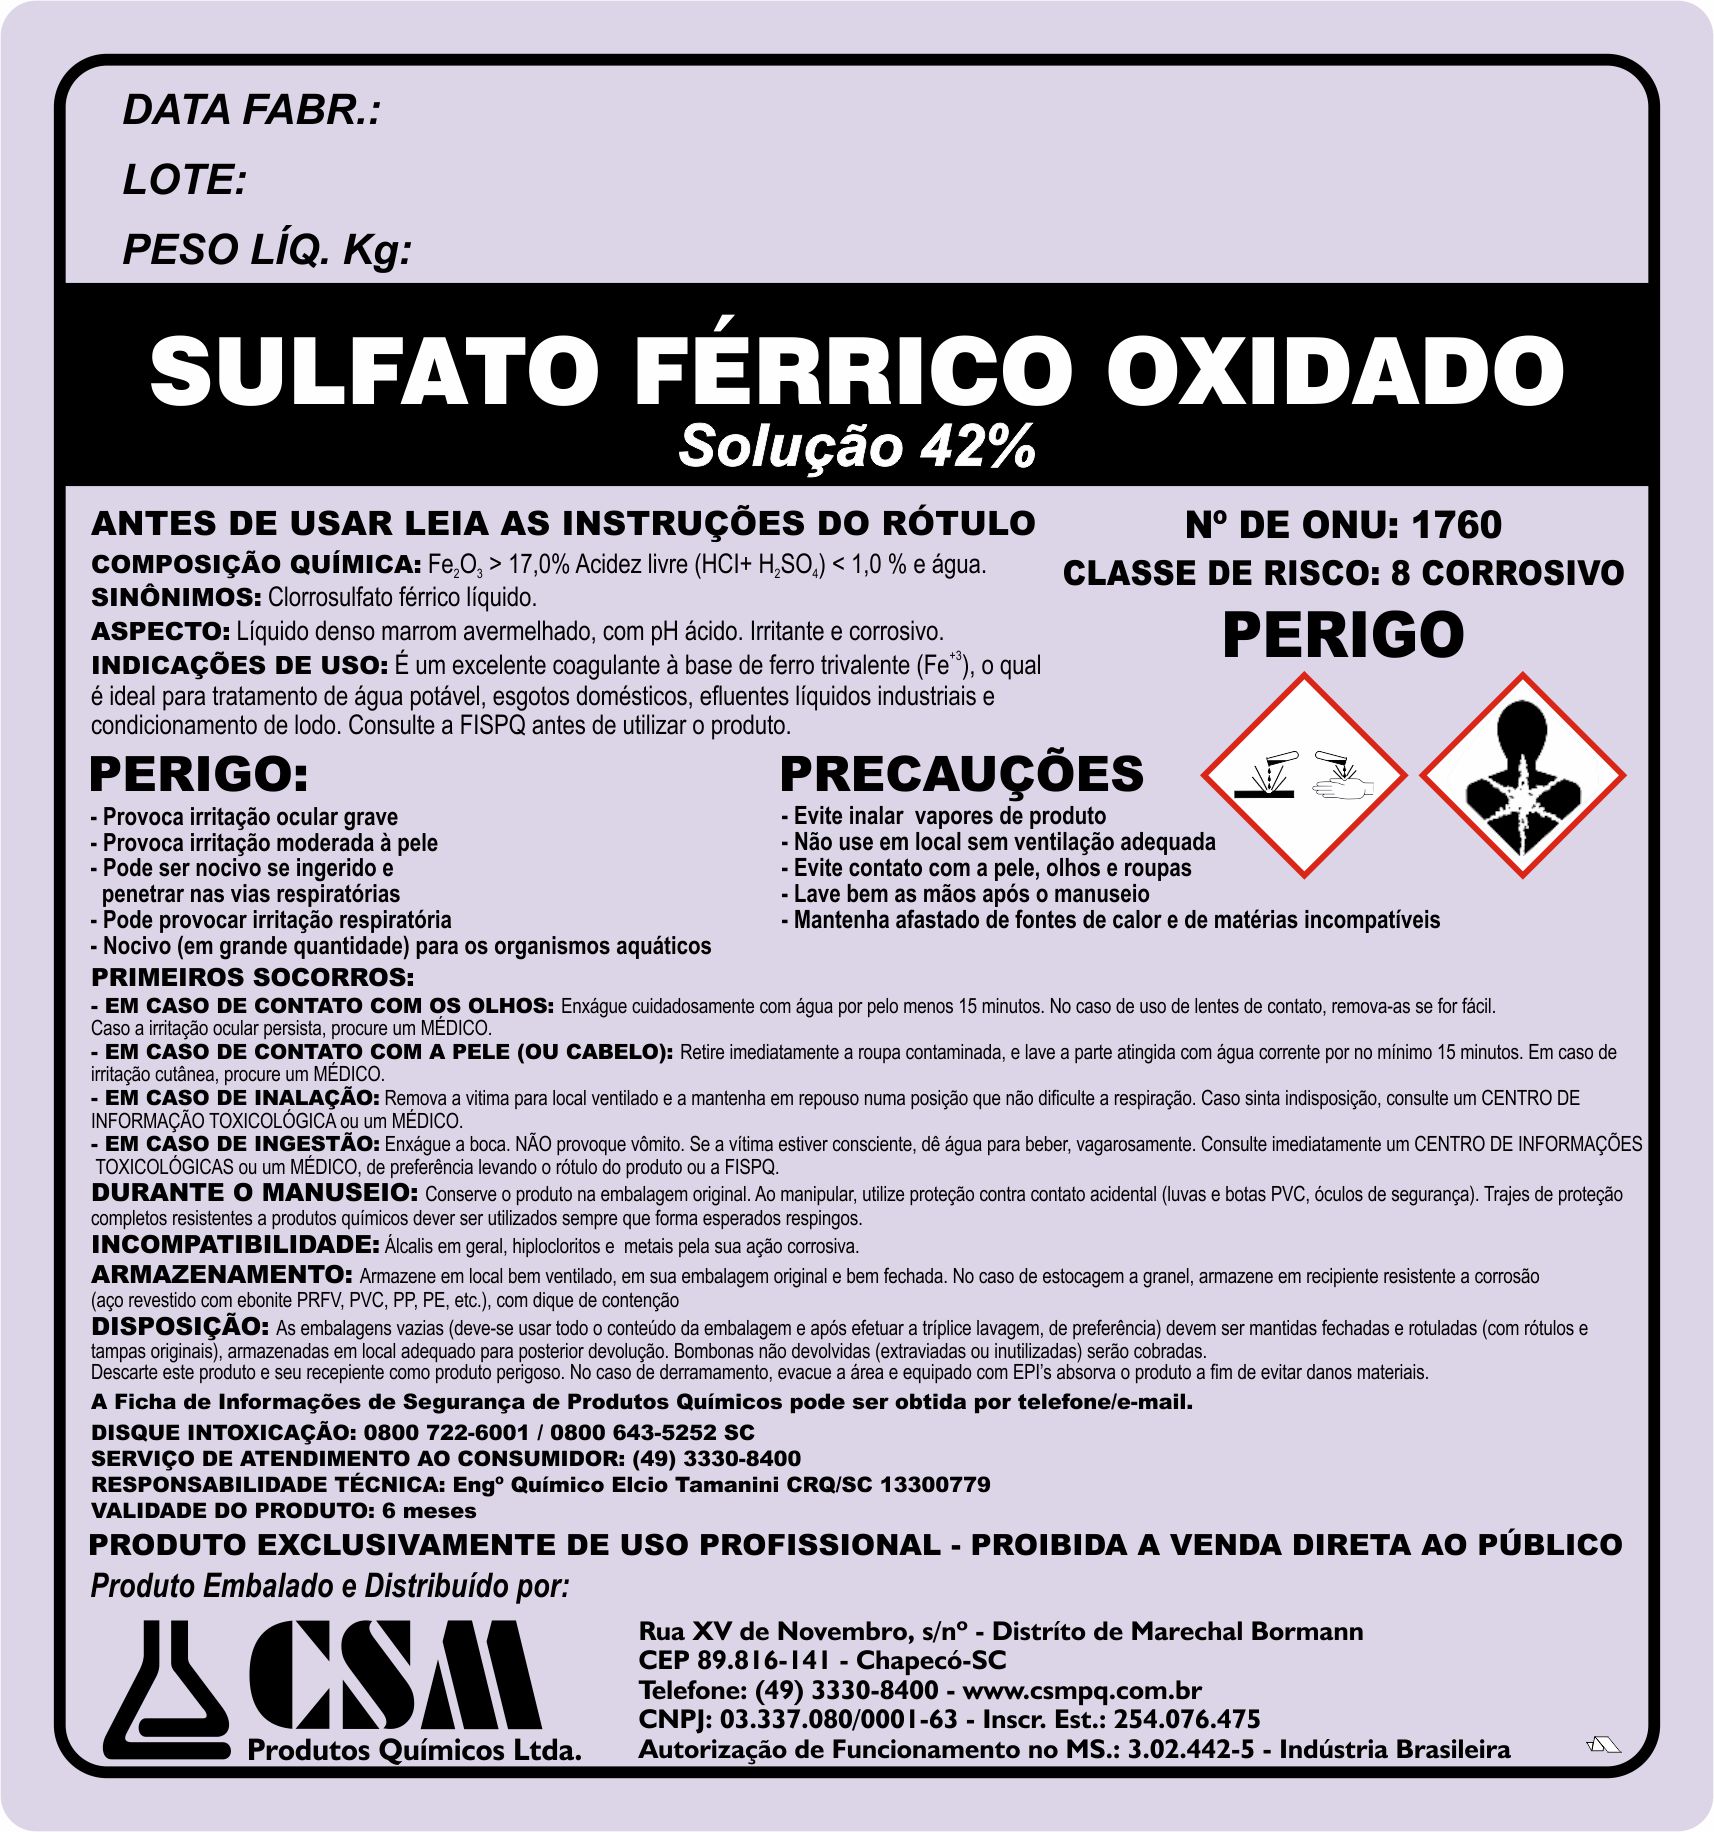 Sulfato ferrico oxidado